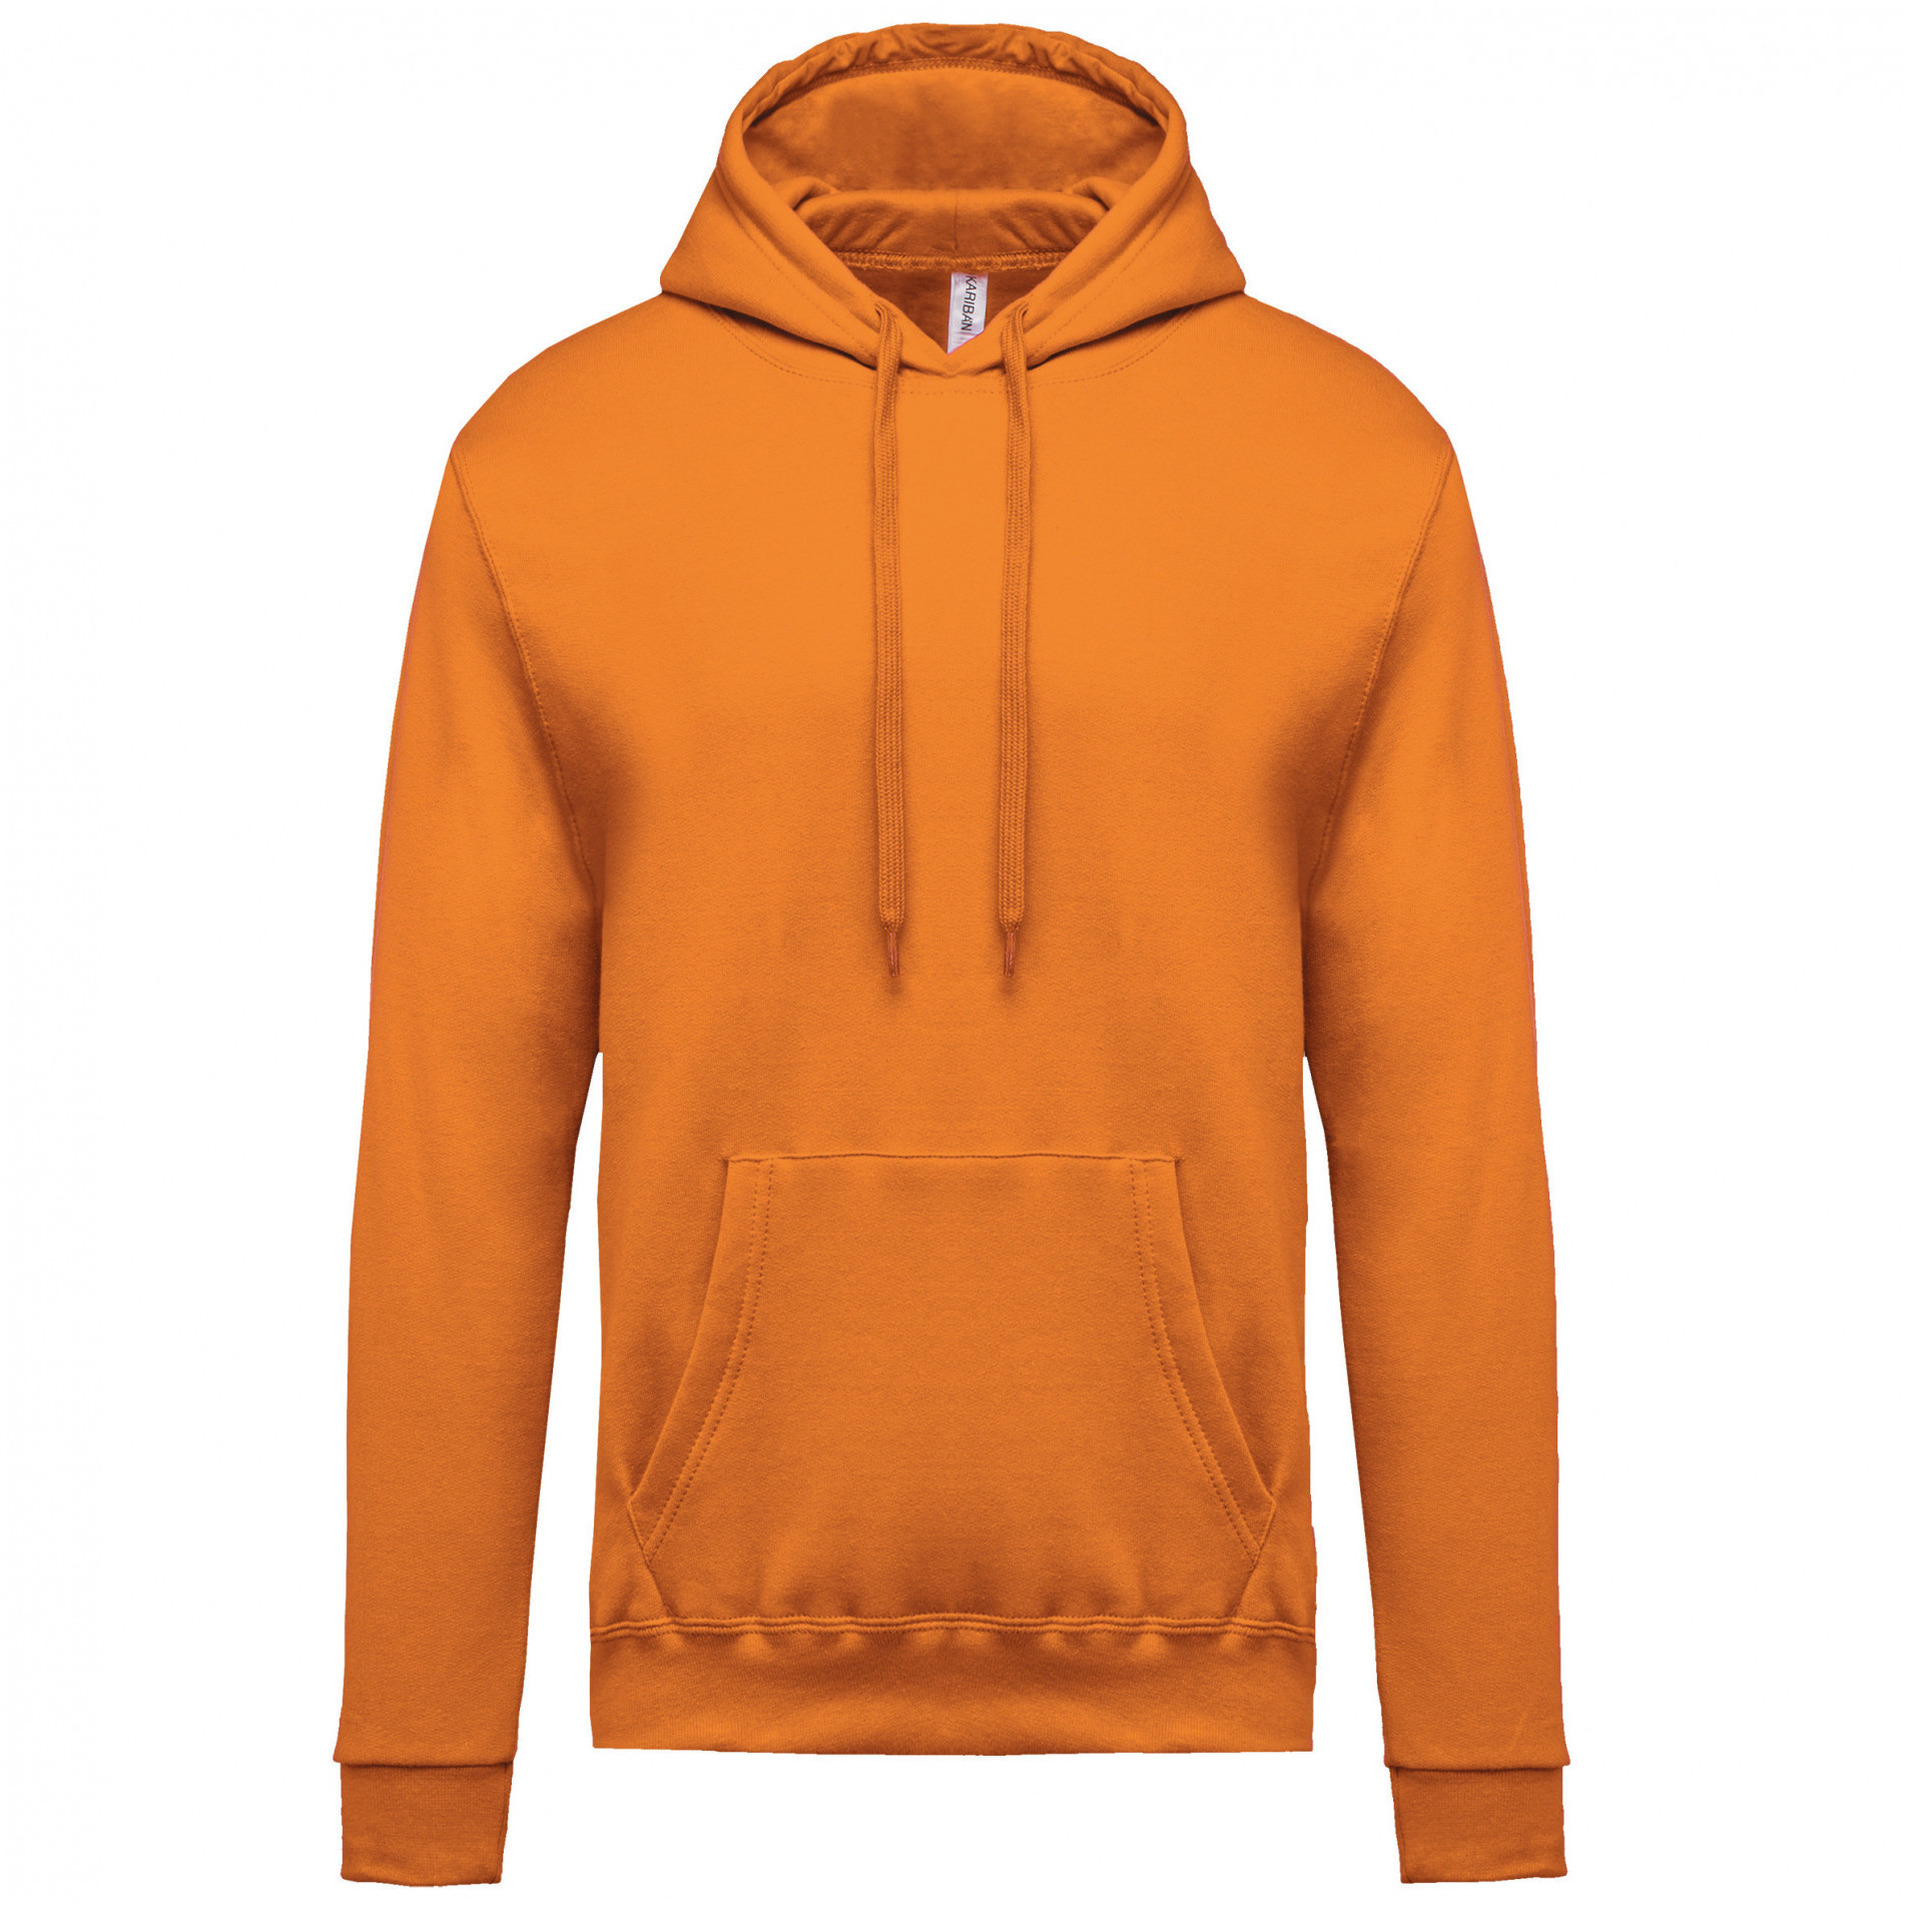 Grote maten oranje sweater/trui hoodie voor heren. casual sweater/hoodie met capuchon in de kleur oranje voor ...